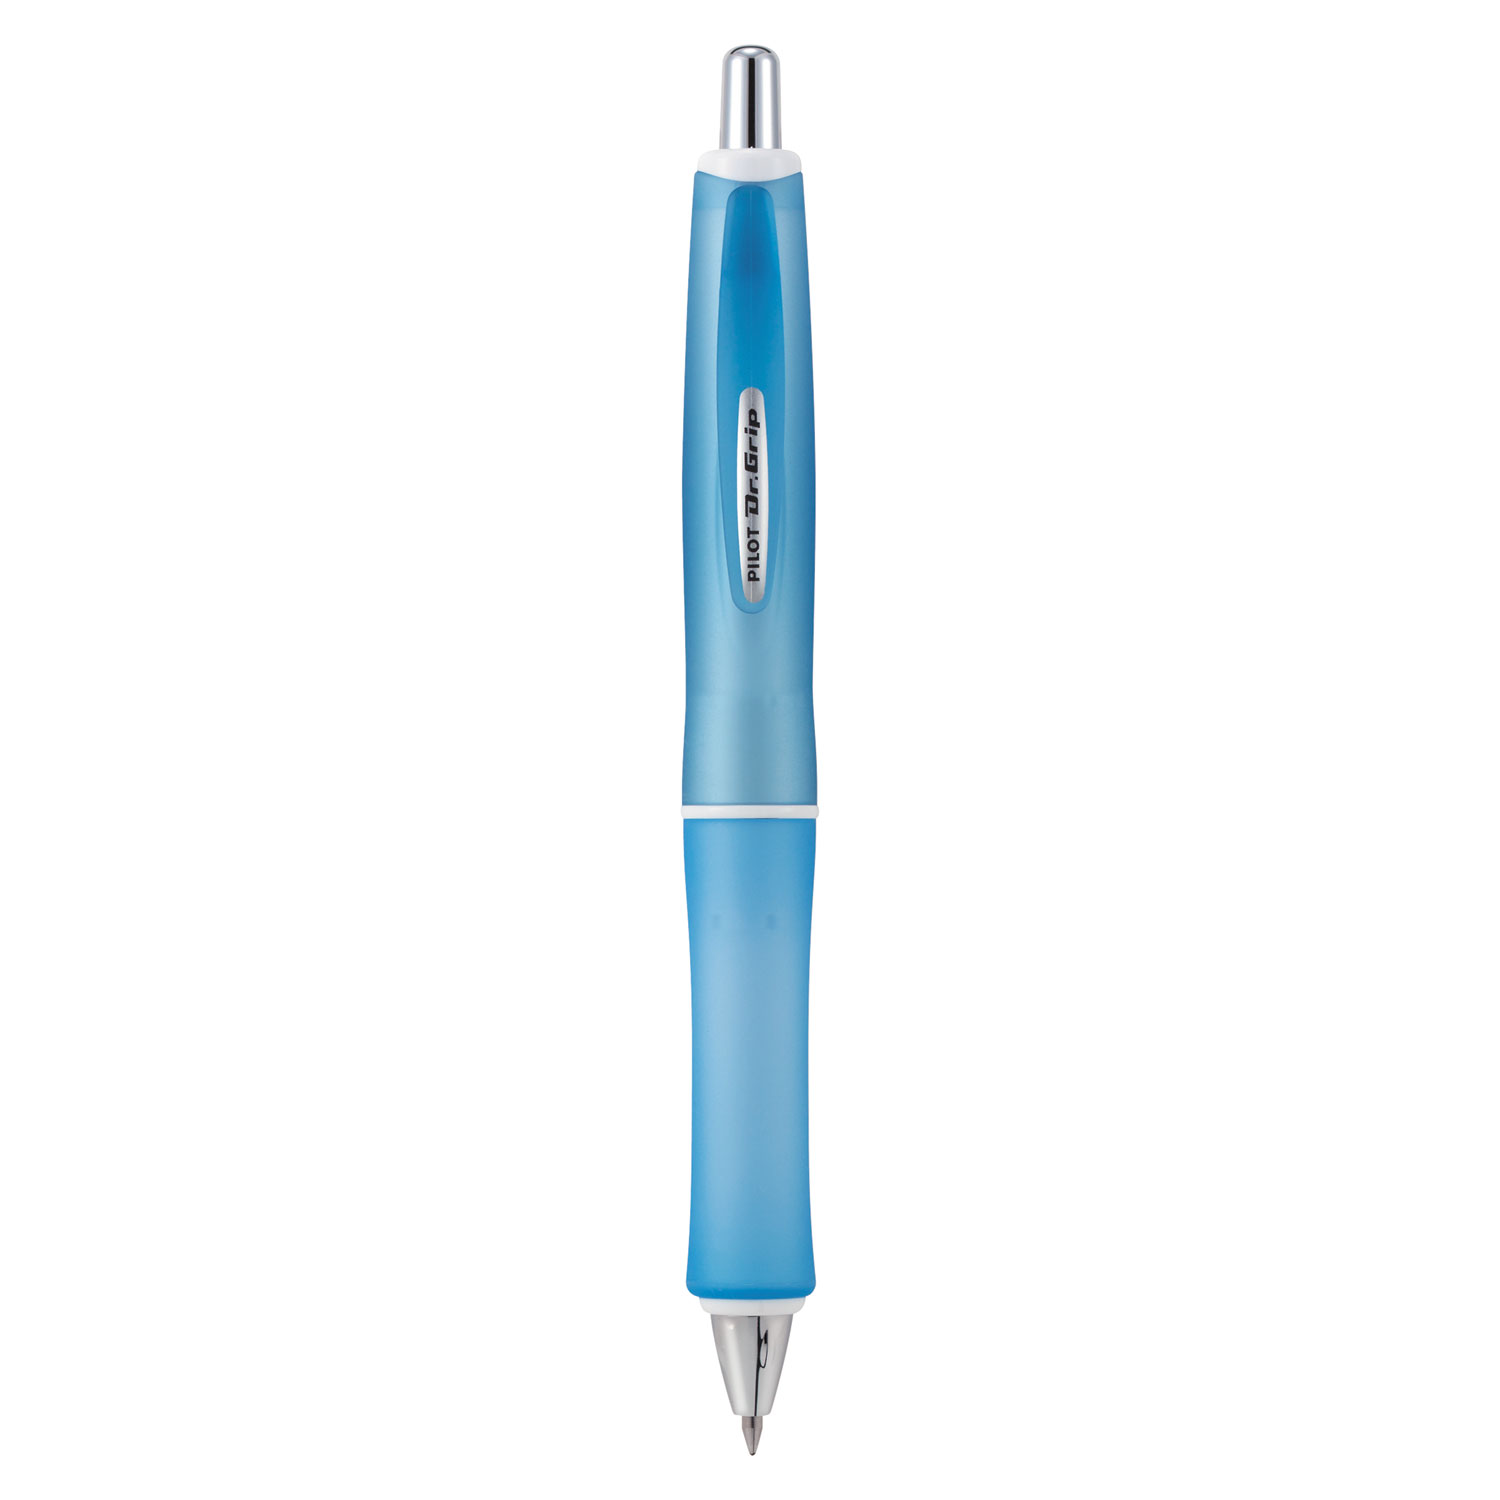 Dr. Grip Frosted Advanced Ink Pen, Blue Barrel, Black Ink, 1mm